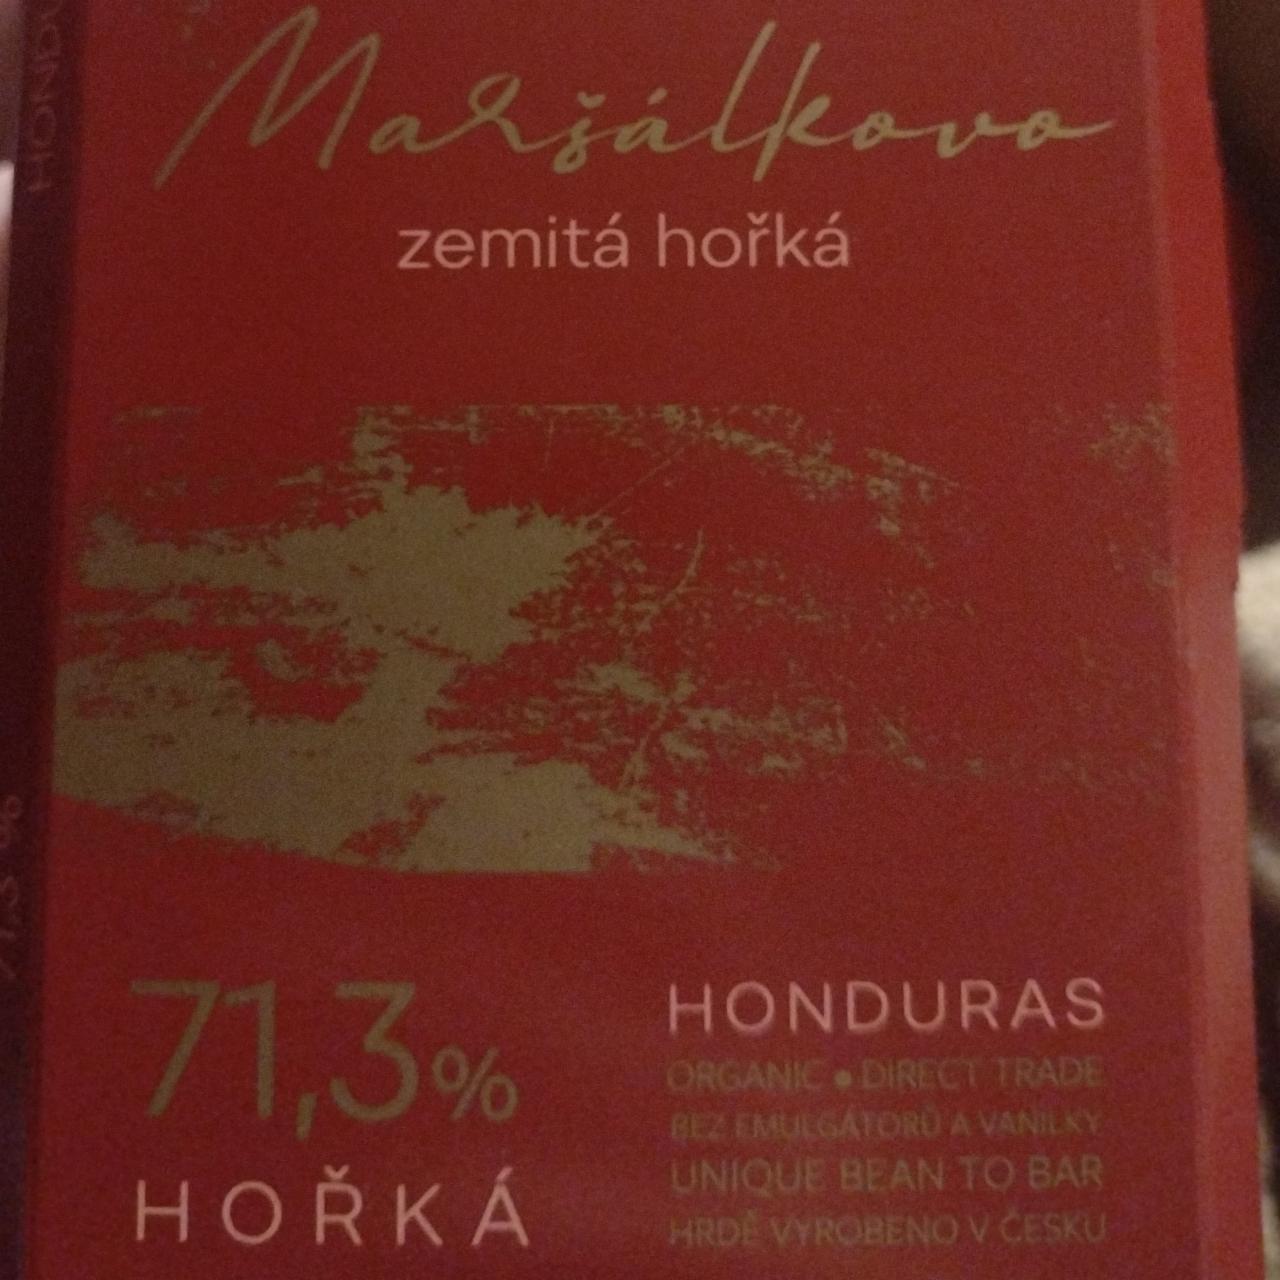 Fotografie - Maršálkovo zemitá hořká HONDURAS 71,3%